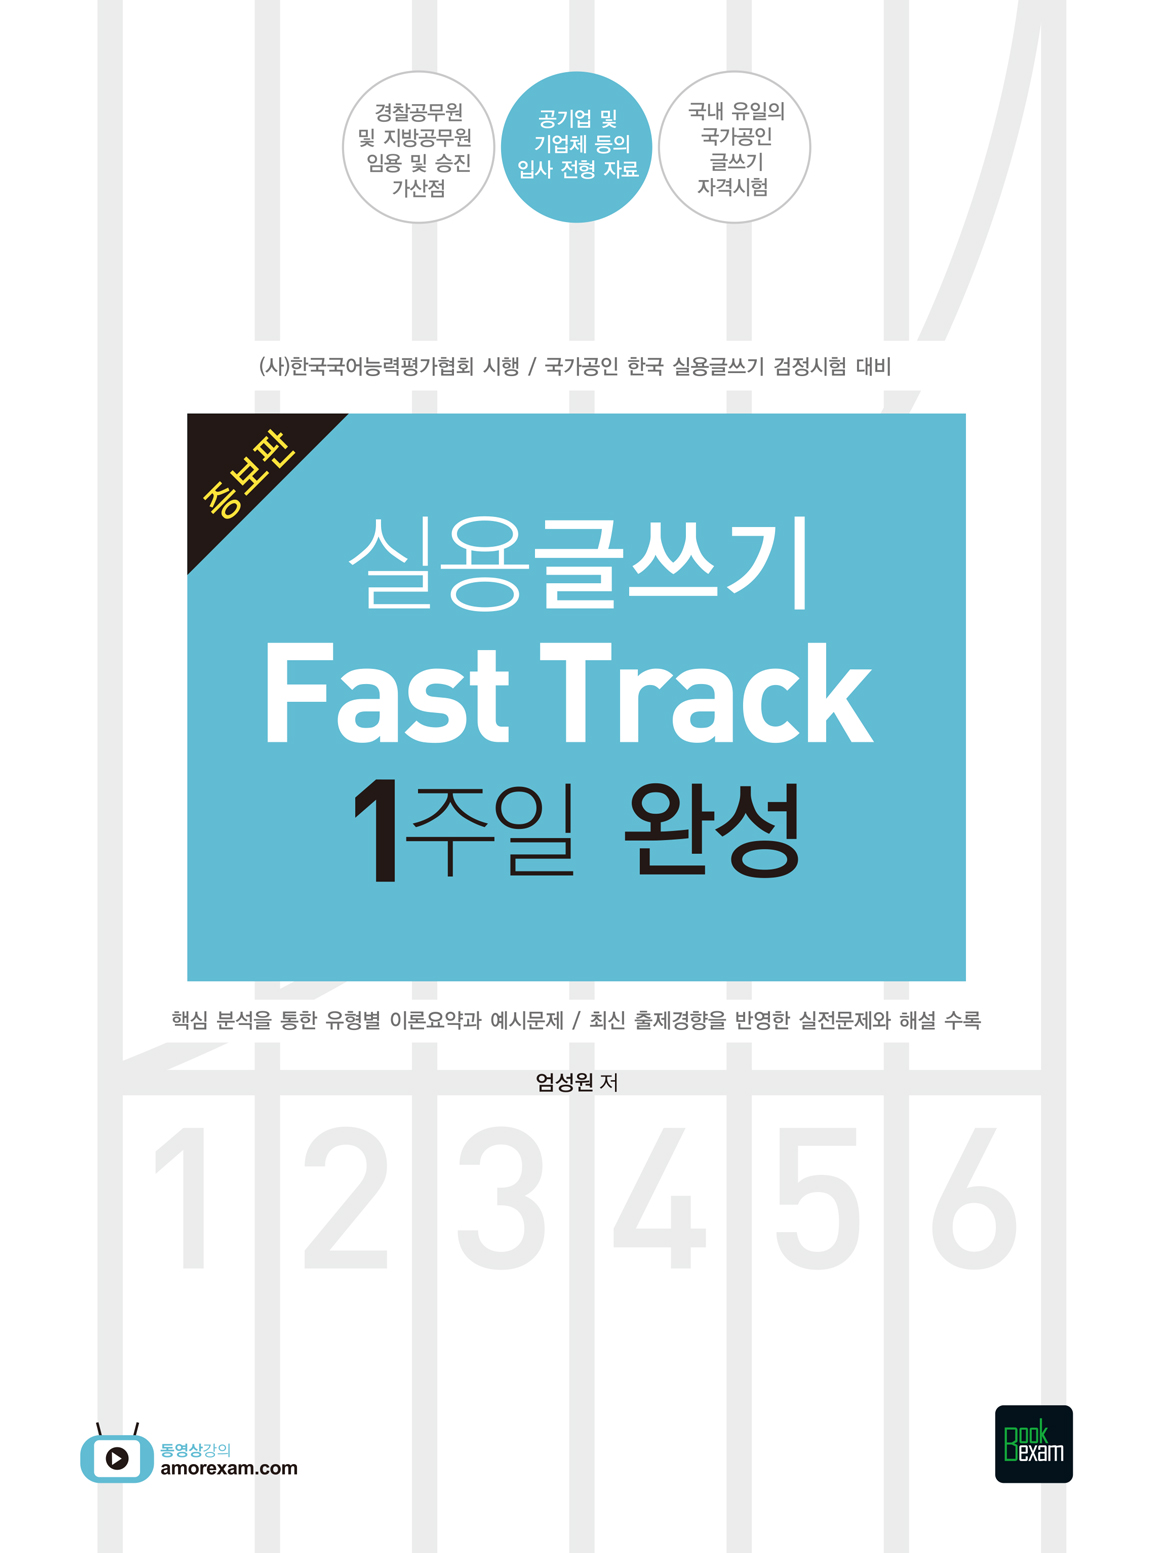  2019 실용글쓰기 Fast Track 1주일 완성